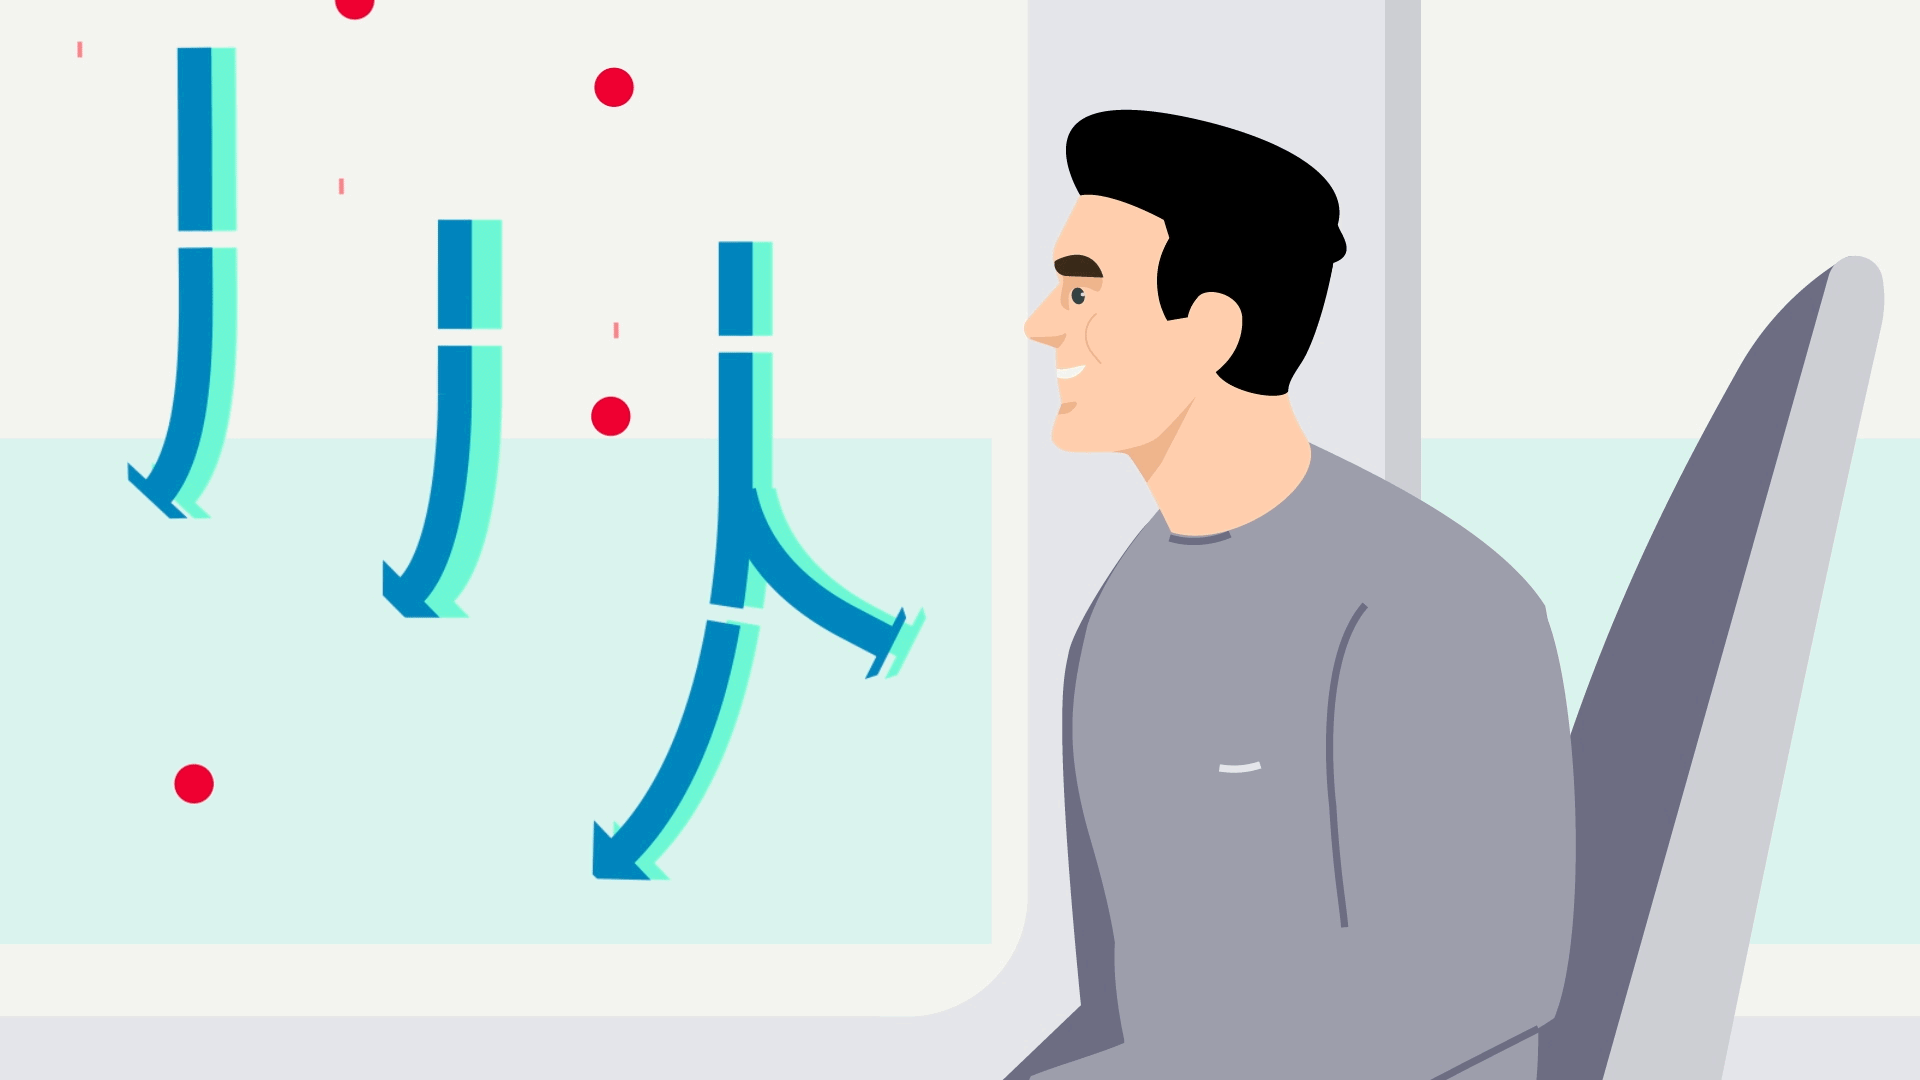 Eine kurze animierte Infografik zeigt, wie die Stärke und Geschwindigkeit des Zuluftstroms das Risiko mindert, dass COVID-19-Viren von Passagieren im Zug eingeatmet werden können.